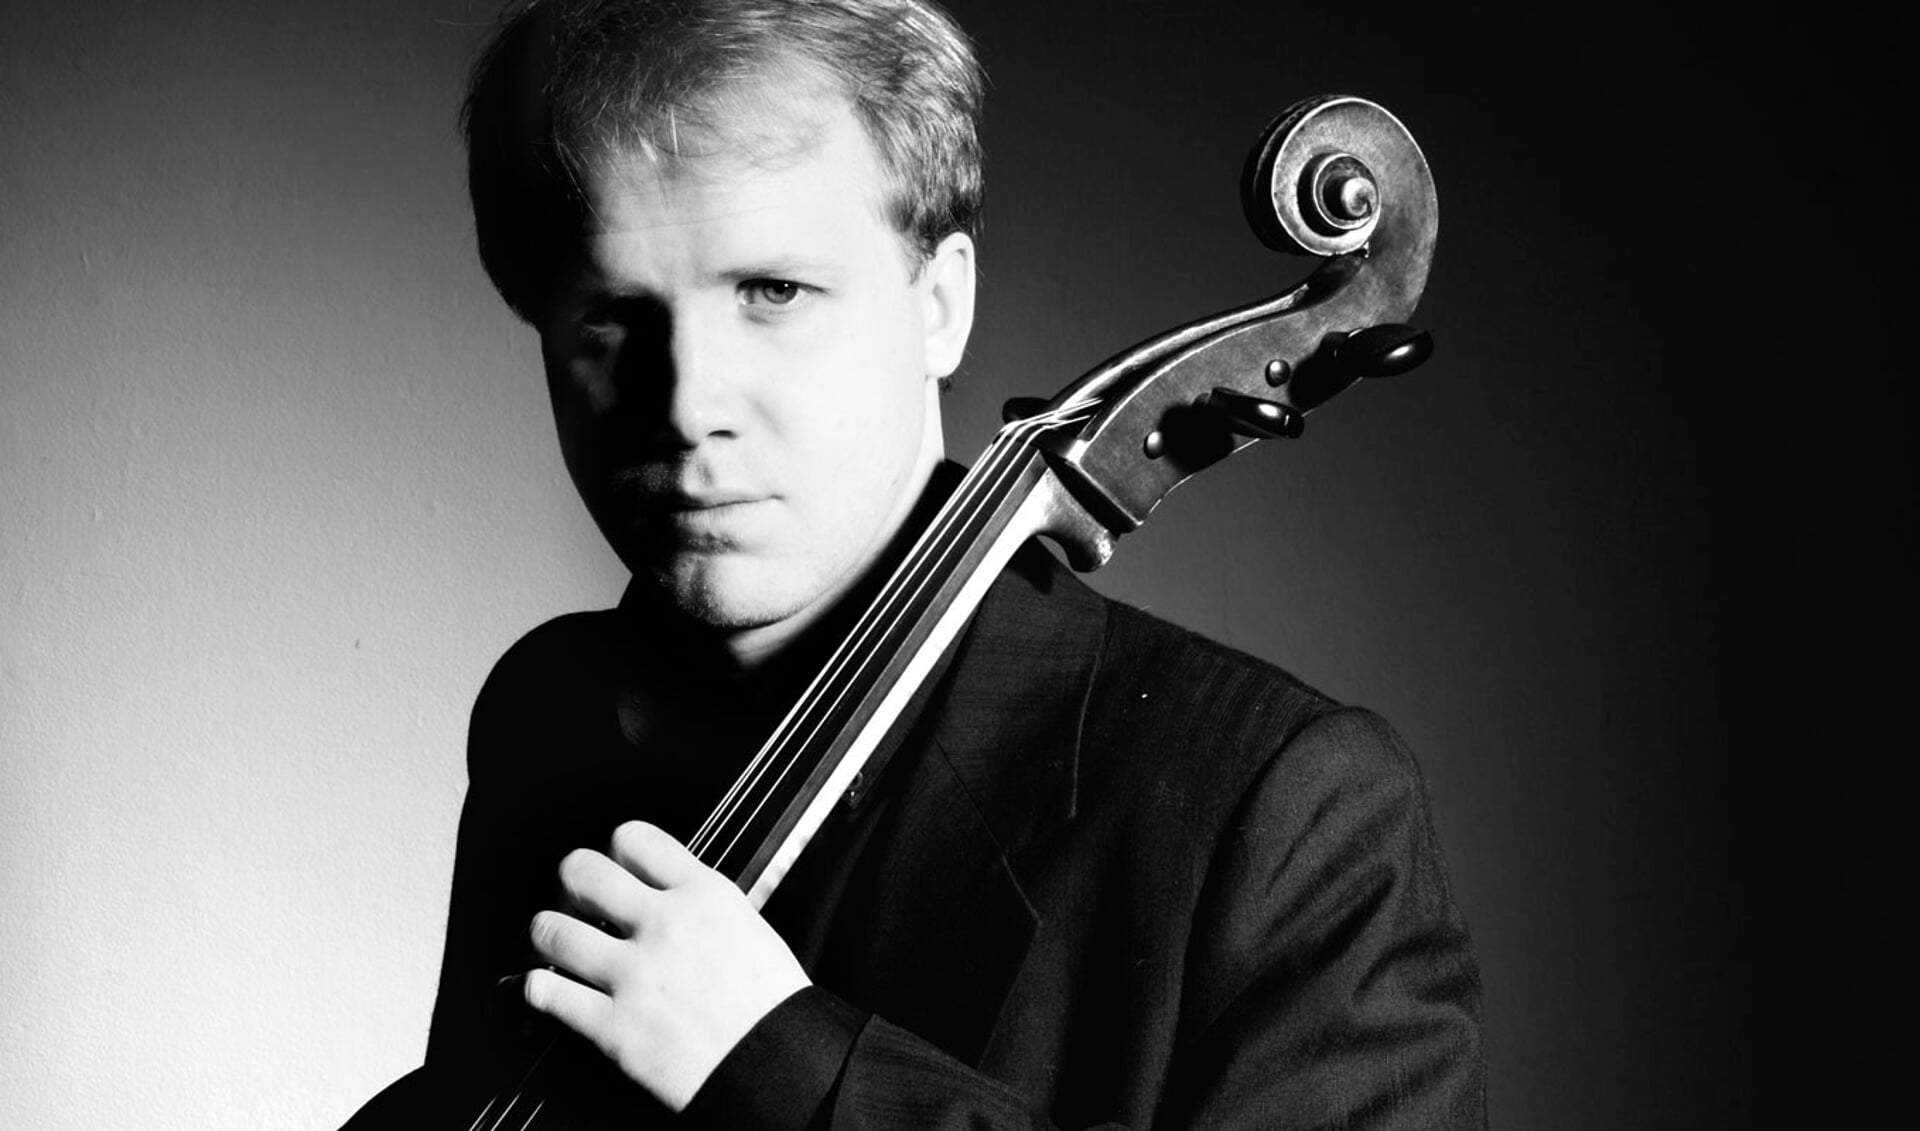 ConcertenVlissingen presenteert Willem Stam cello en Daan Treur piano, op zondag 23 februari.